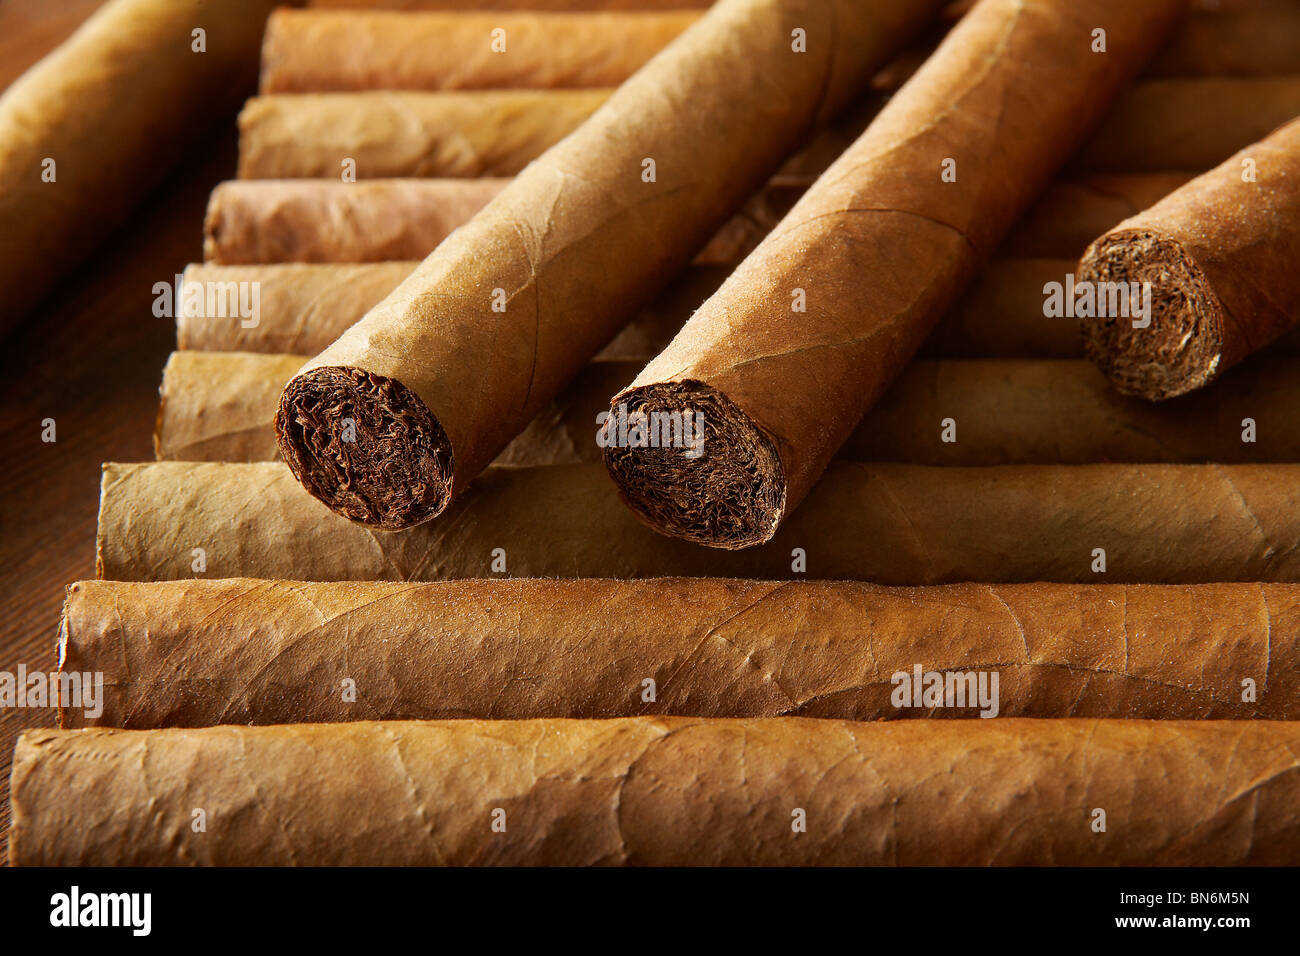 Zigarren, Rauchen, Genussmittel, Genuss, Sucht, Luxus, Tabak, Cohiba,  Kubanische, Kiste, Zigarrenkiste, Zigarre, Droge, Drogen Stock Photo - Alamy